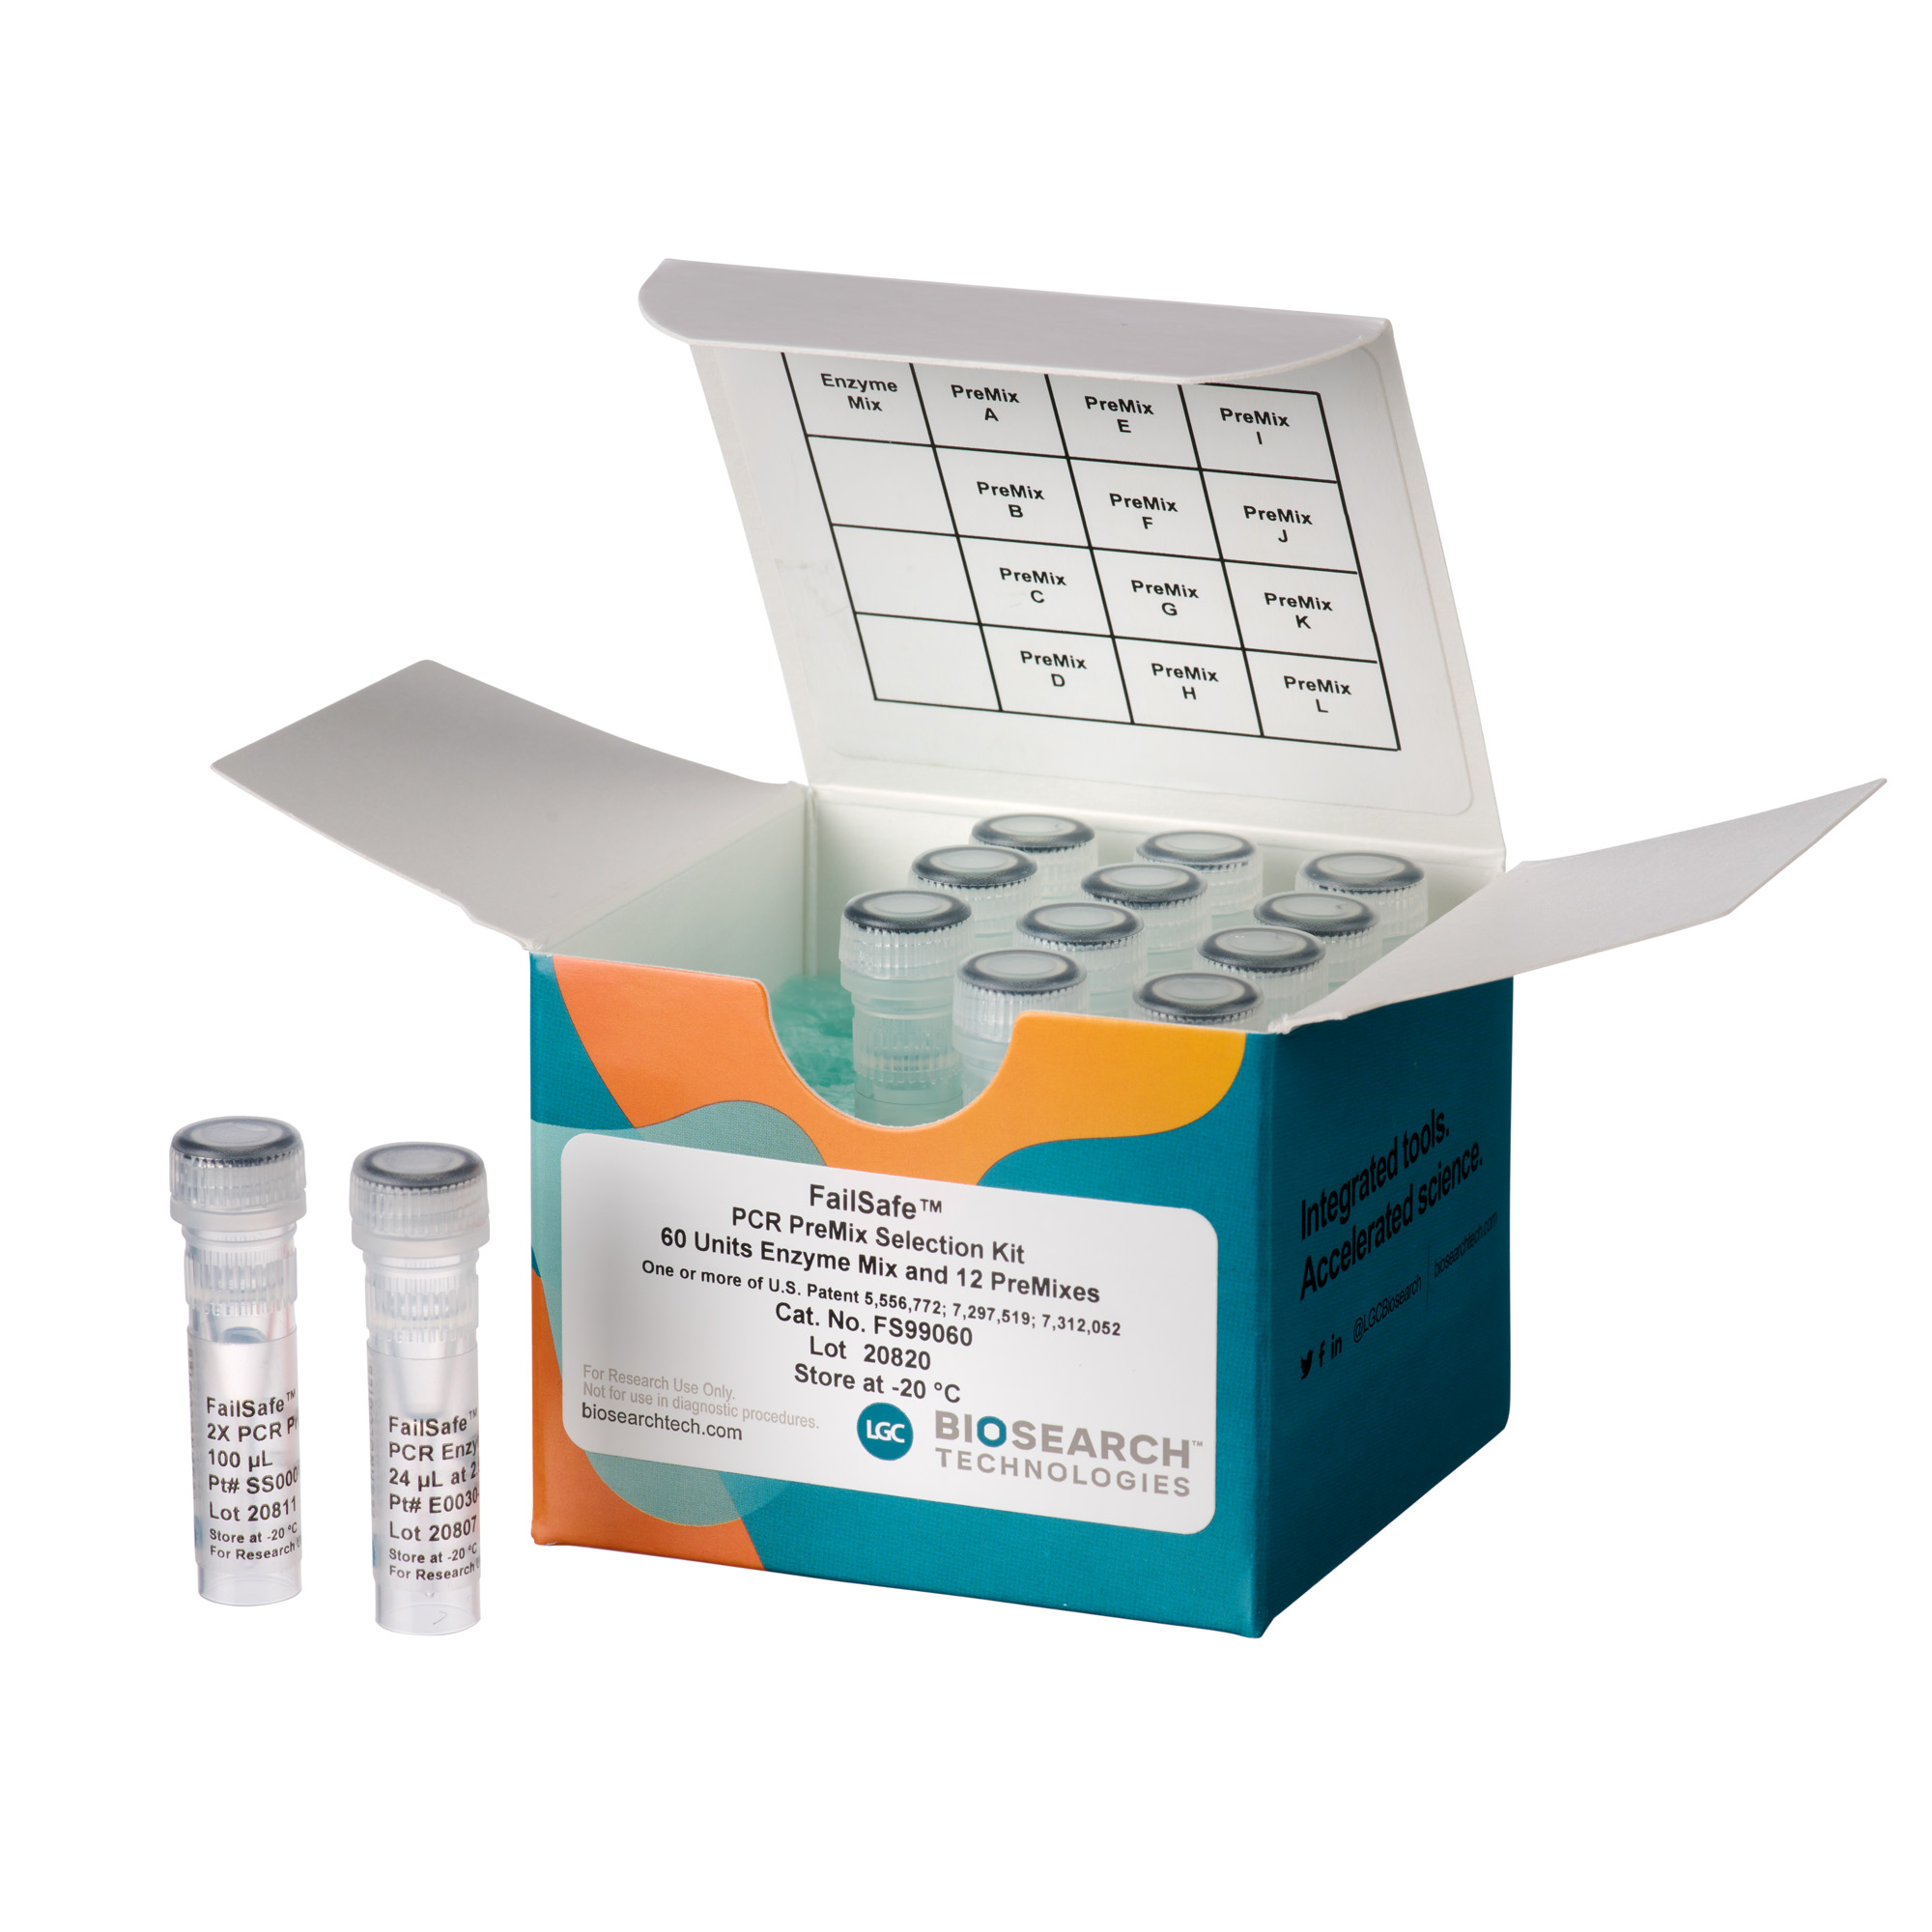 Contents of FailSafe PCR PreMix Selection Kit